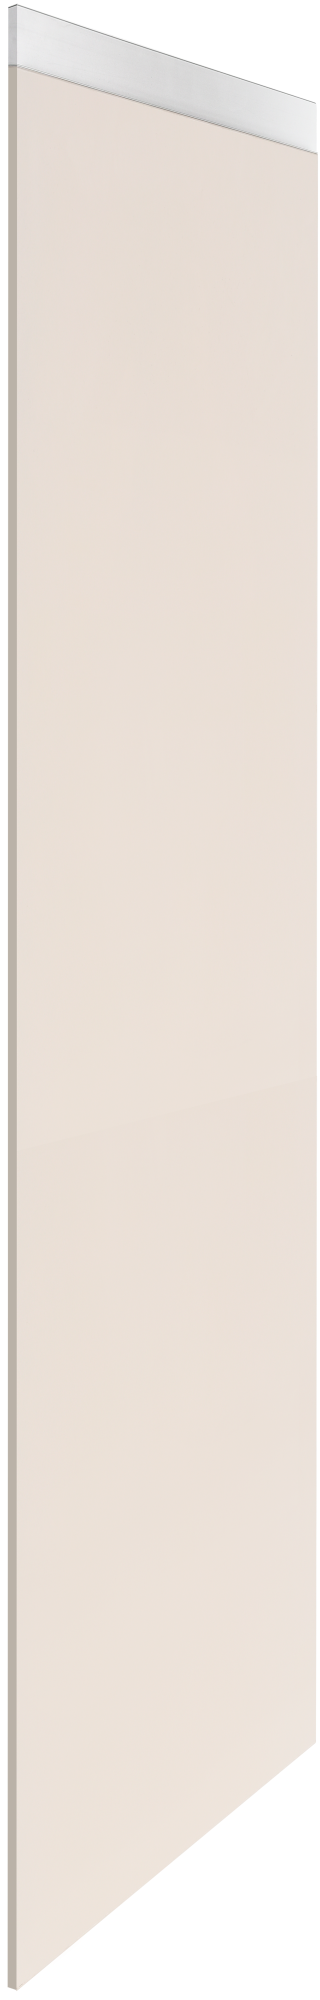 Costado delinia id mikonos marrón 60x236,4 cm